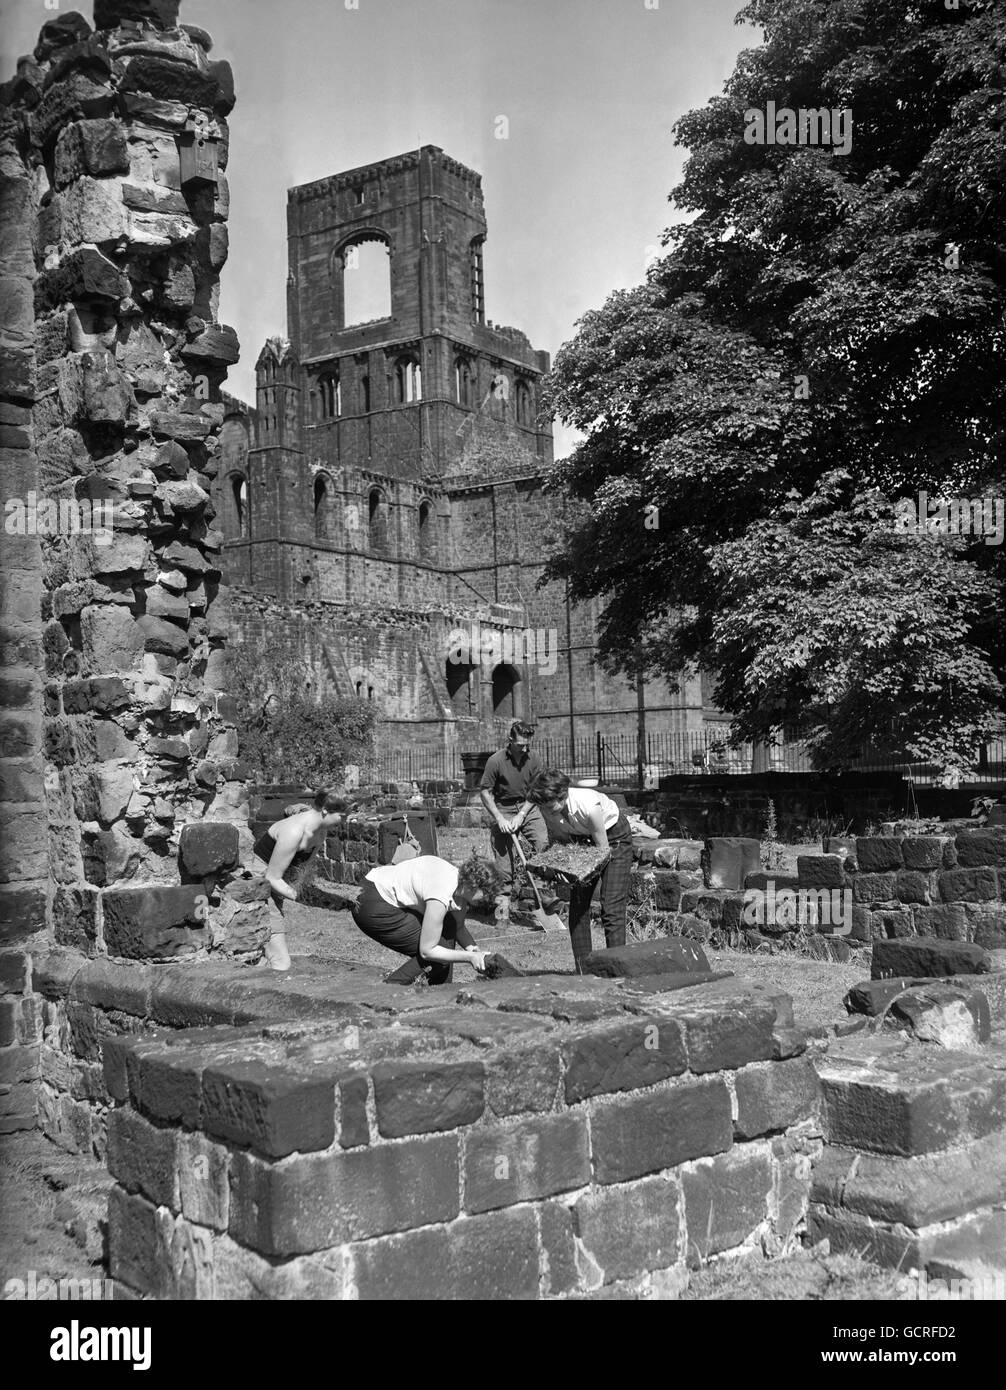 Eine archäologische Ausgrabung im Gange inmitten der Ruinen der Kirkstall Abbey, Leeds. Die Zisterzienserabtei, die um 1140 erbaut wurde, wurde nach der Auflösung der Klöster im 16. Jahrhundert zerstört, wobei ein Großteil des Steins während dieser und später für den Bau lokaler Gebäude verwendet wurde. Stockfoto